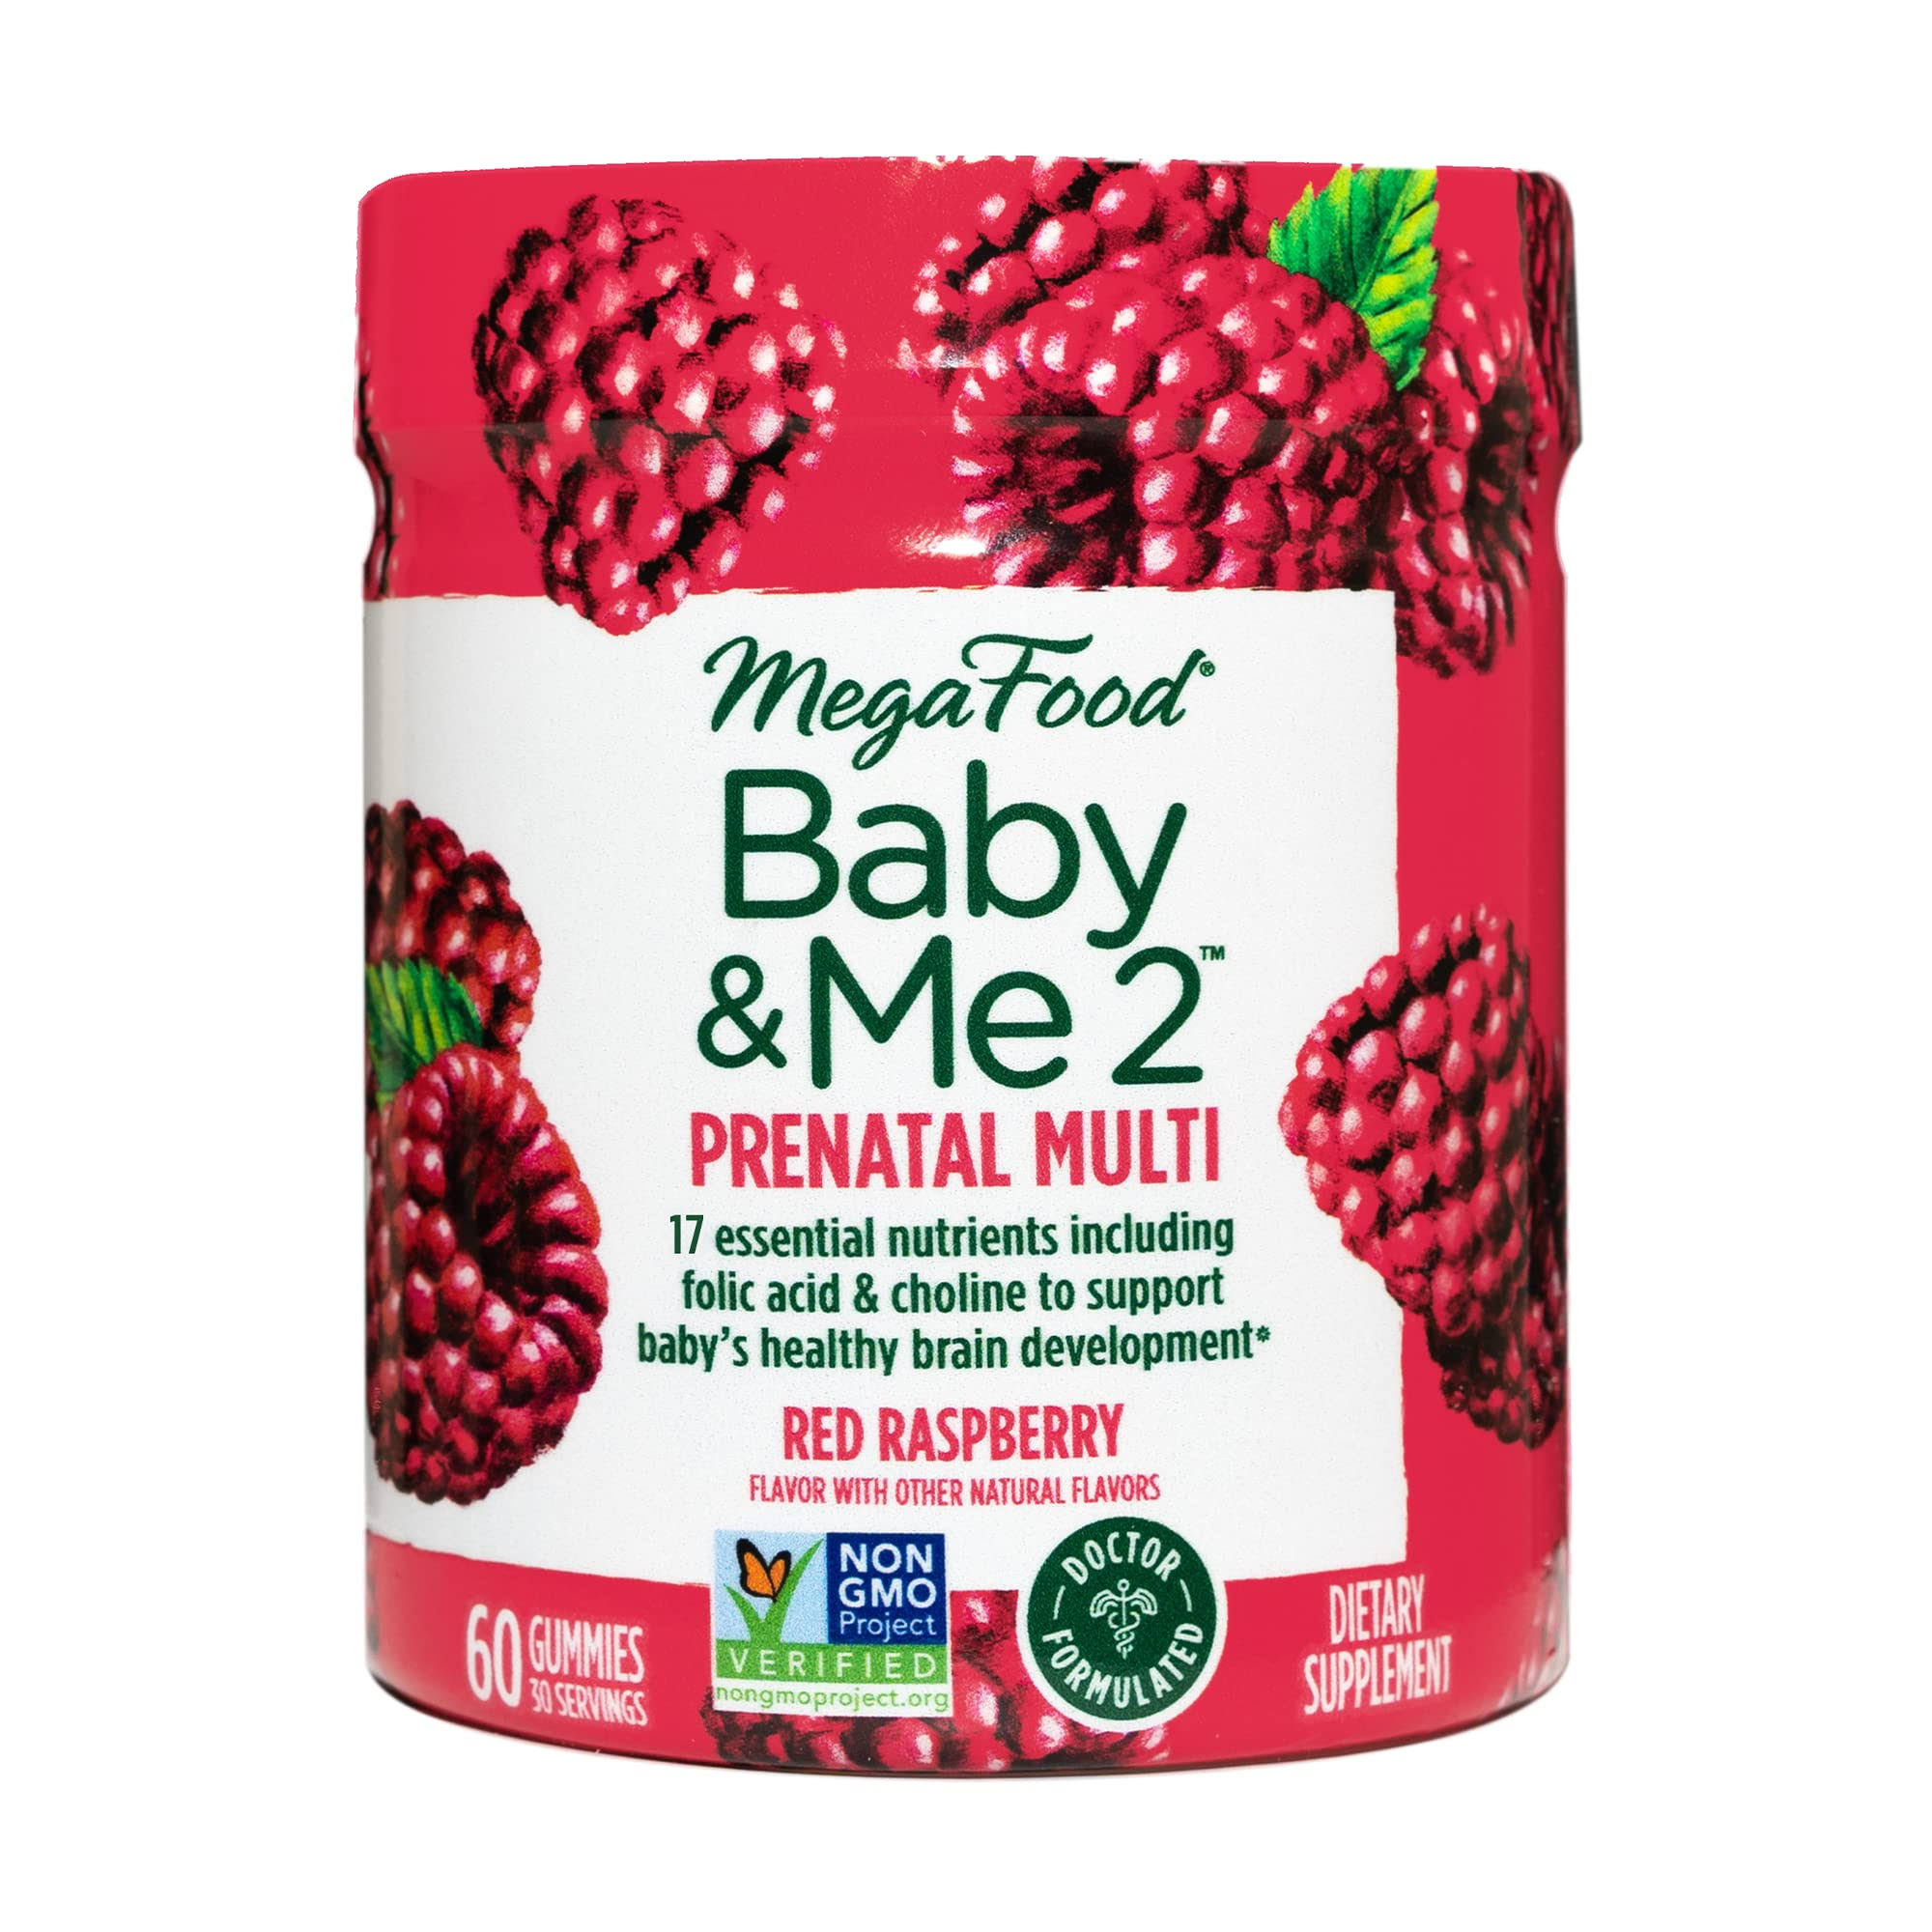 MegaFood Baby & Me 2 Prenatal Multivitamin Red Raspberry 60 Gummies